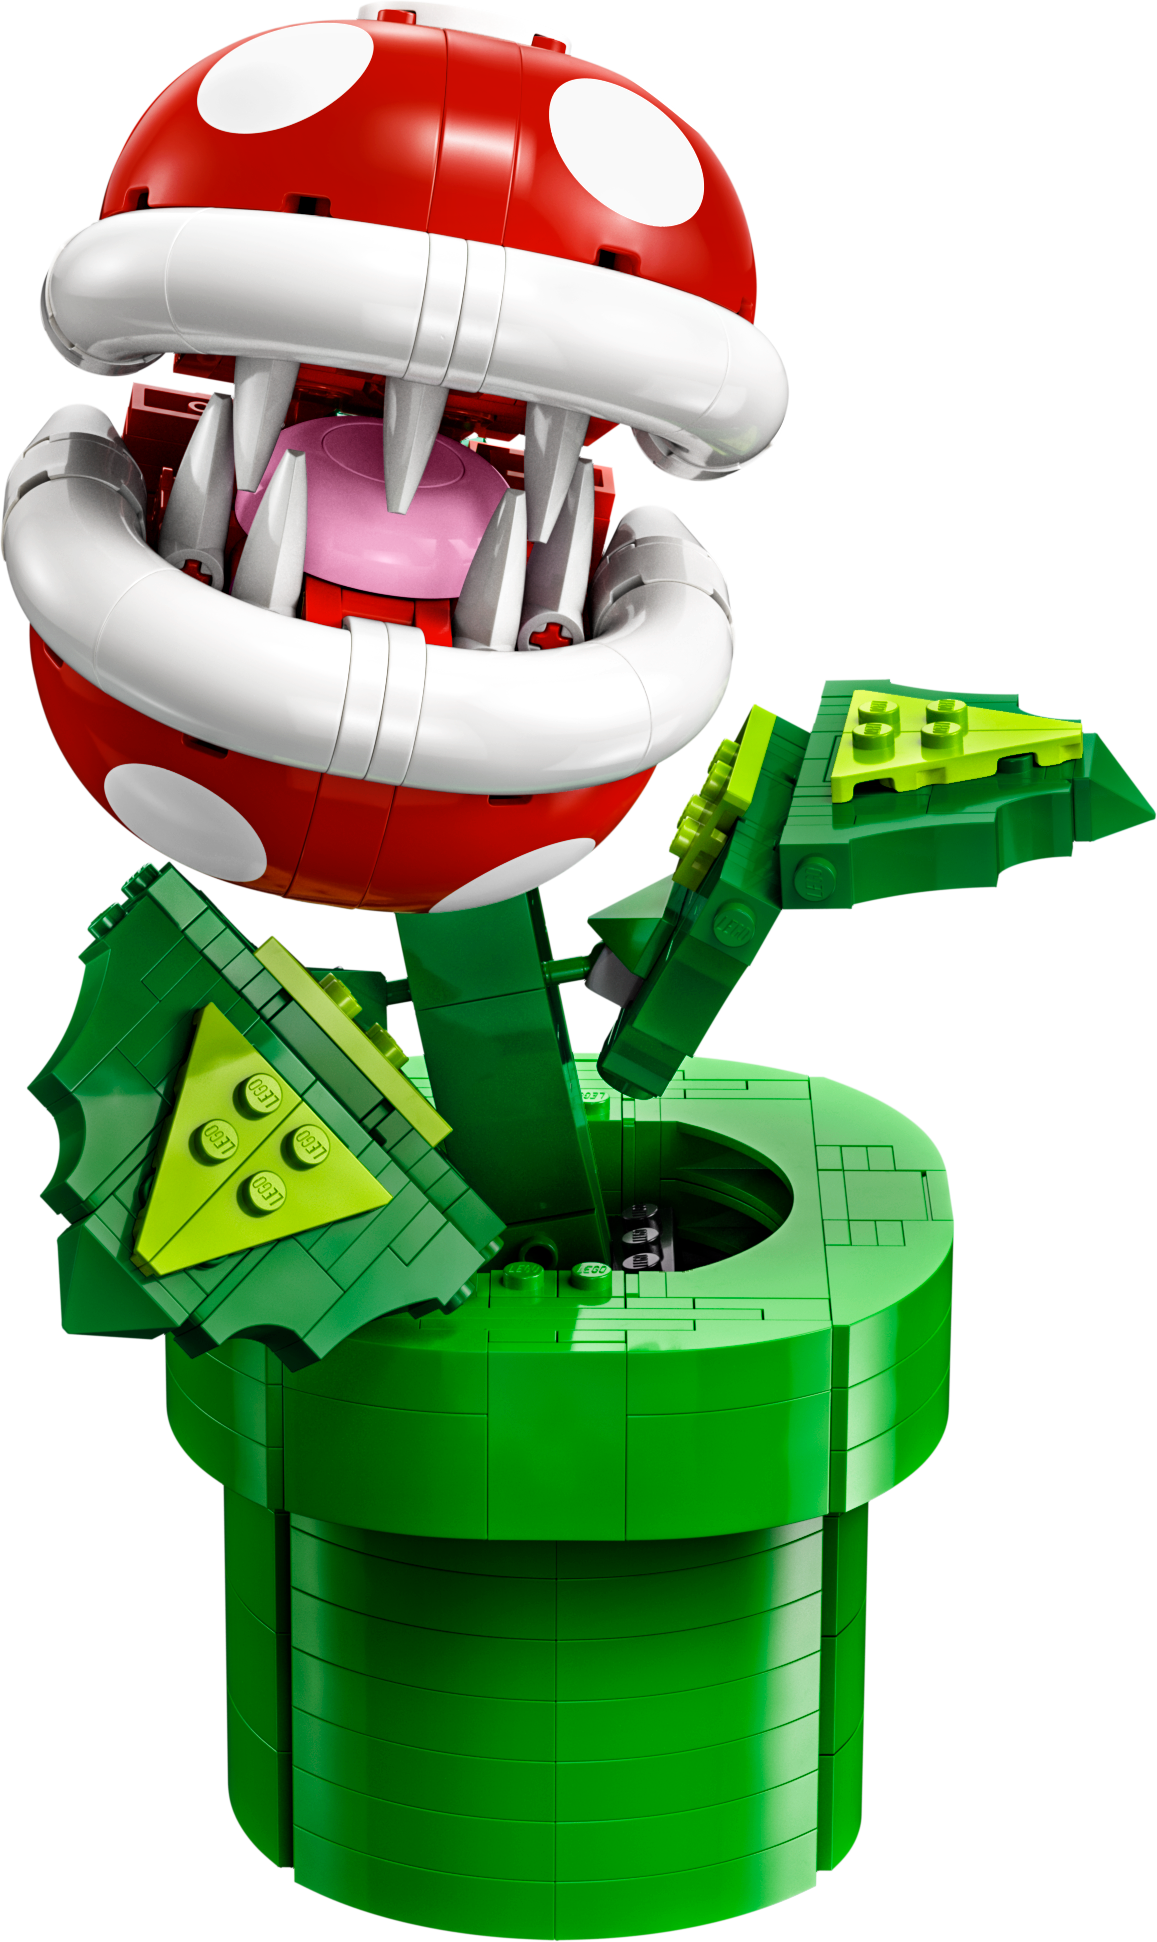 LEGO: in arrivo la Pianta Piranha di Super Mario - Nerdgames